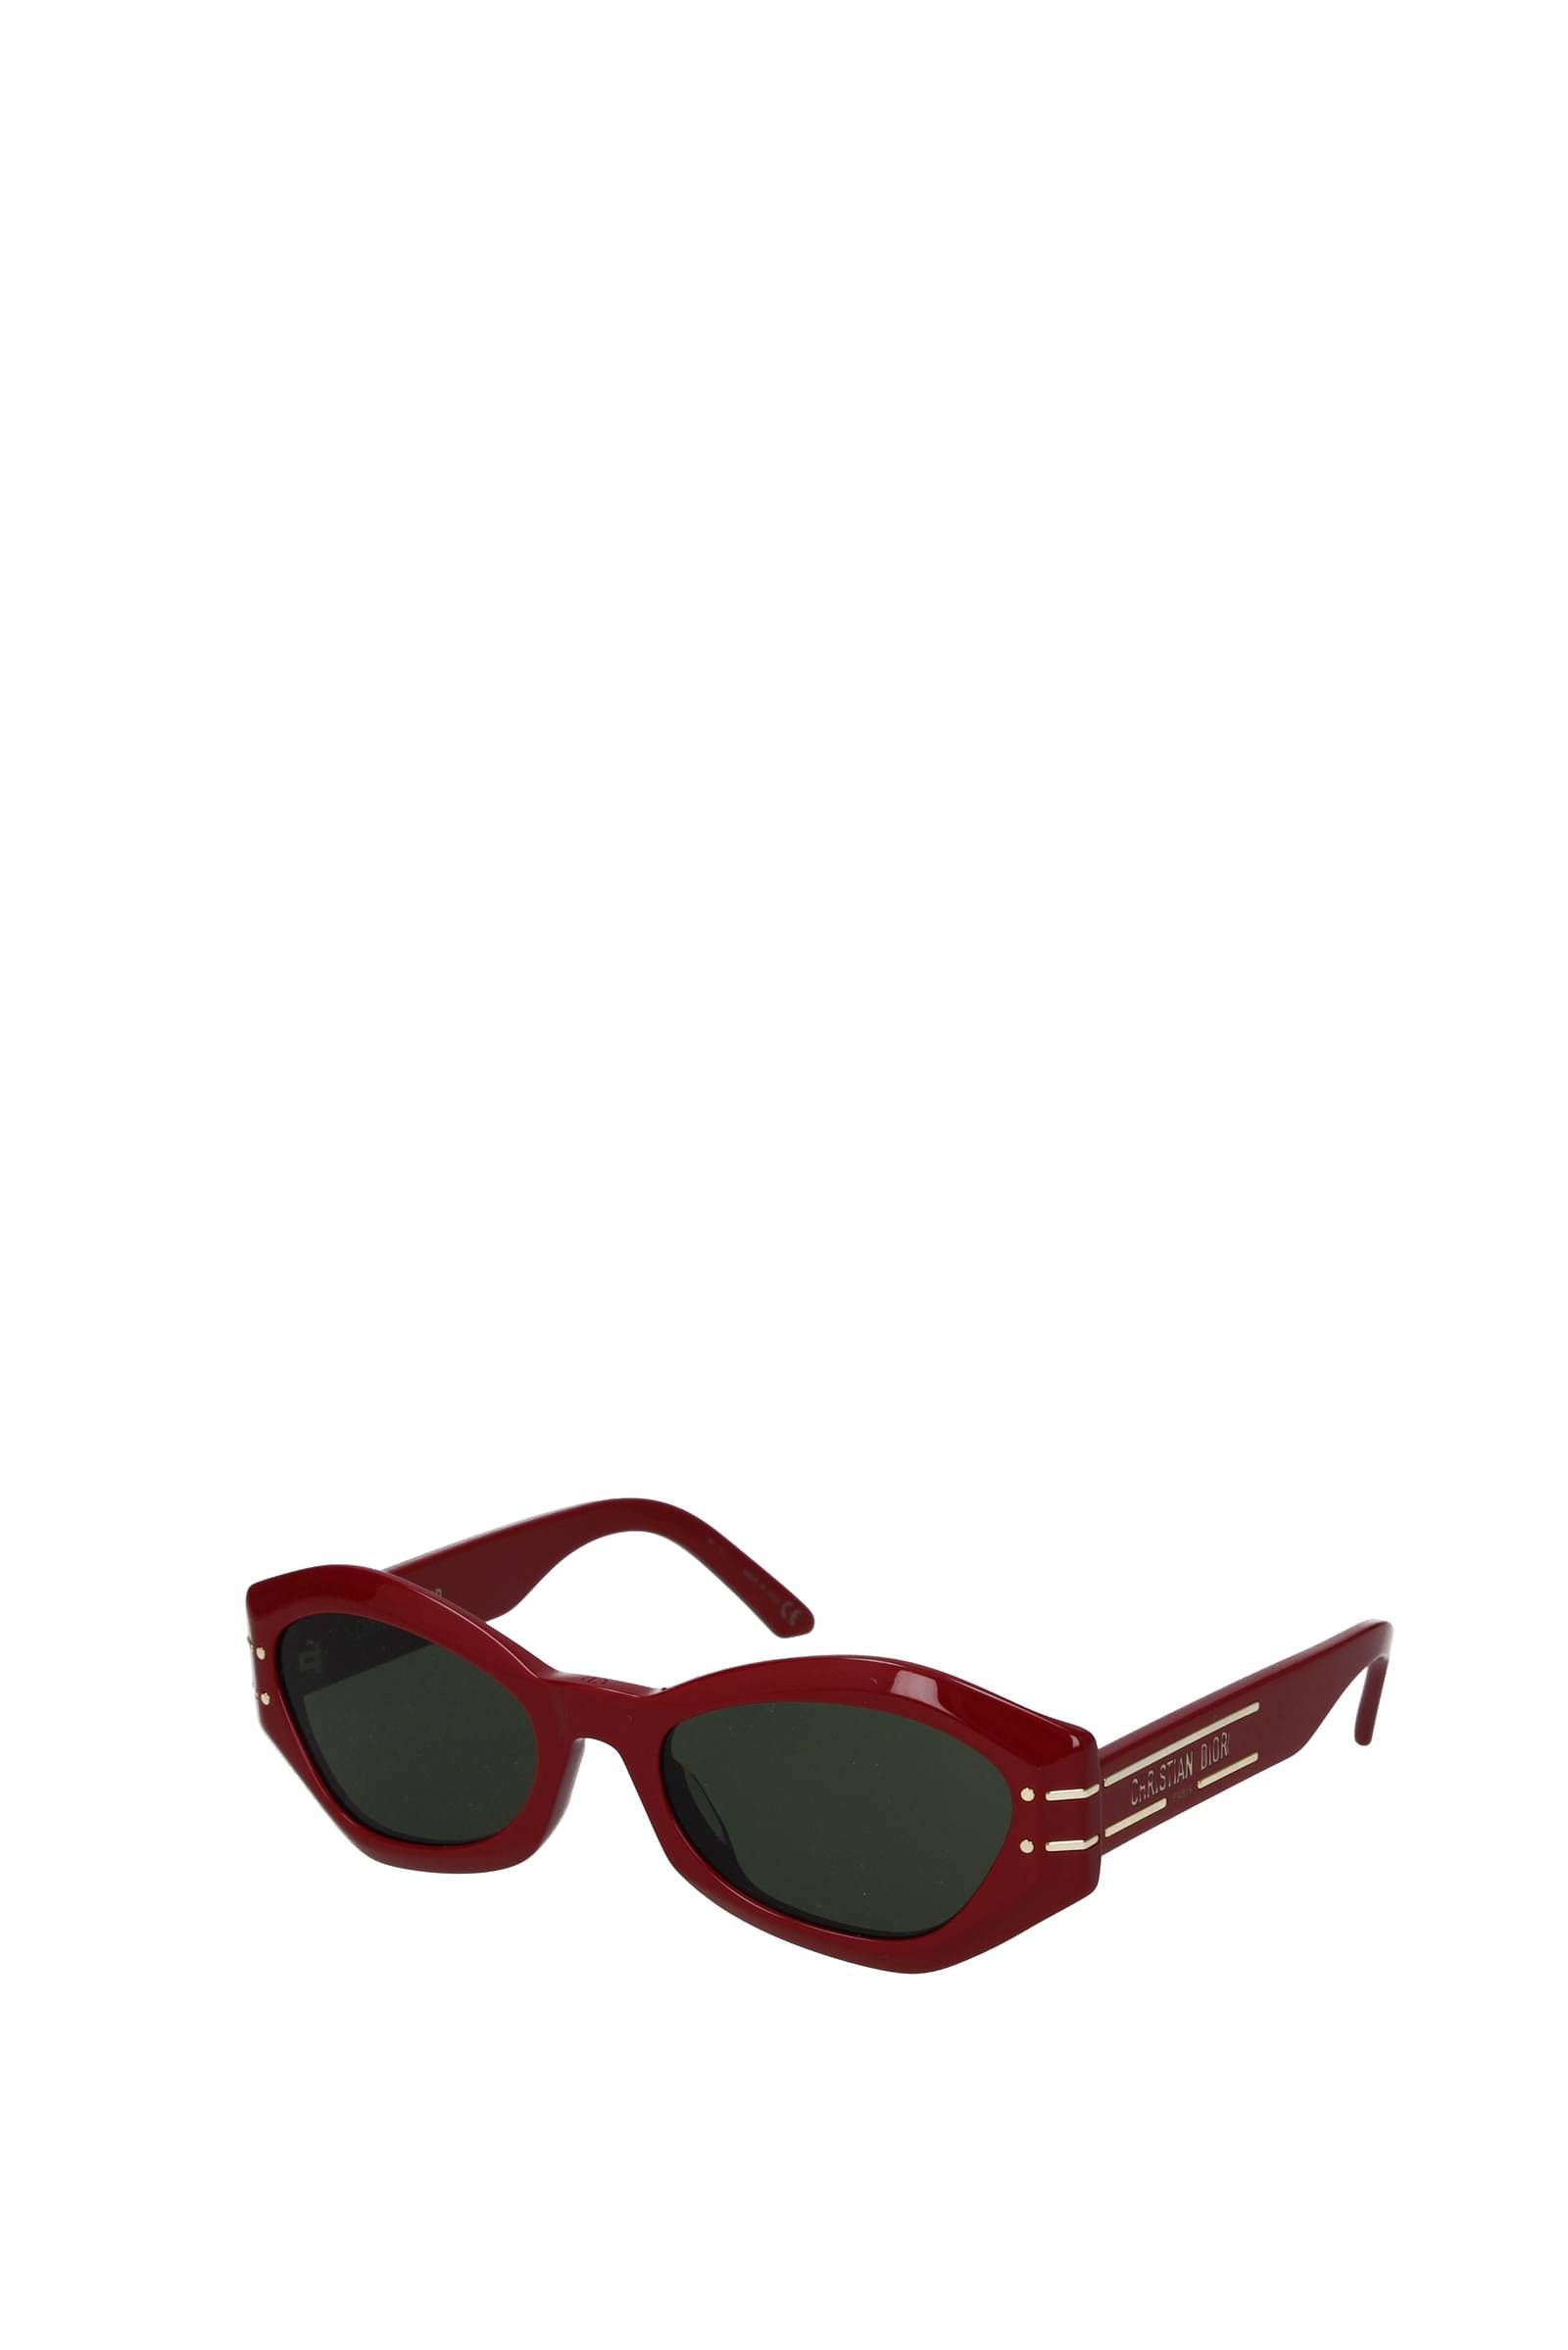 Dior Sunglasses for Women  Bloomingdales